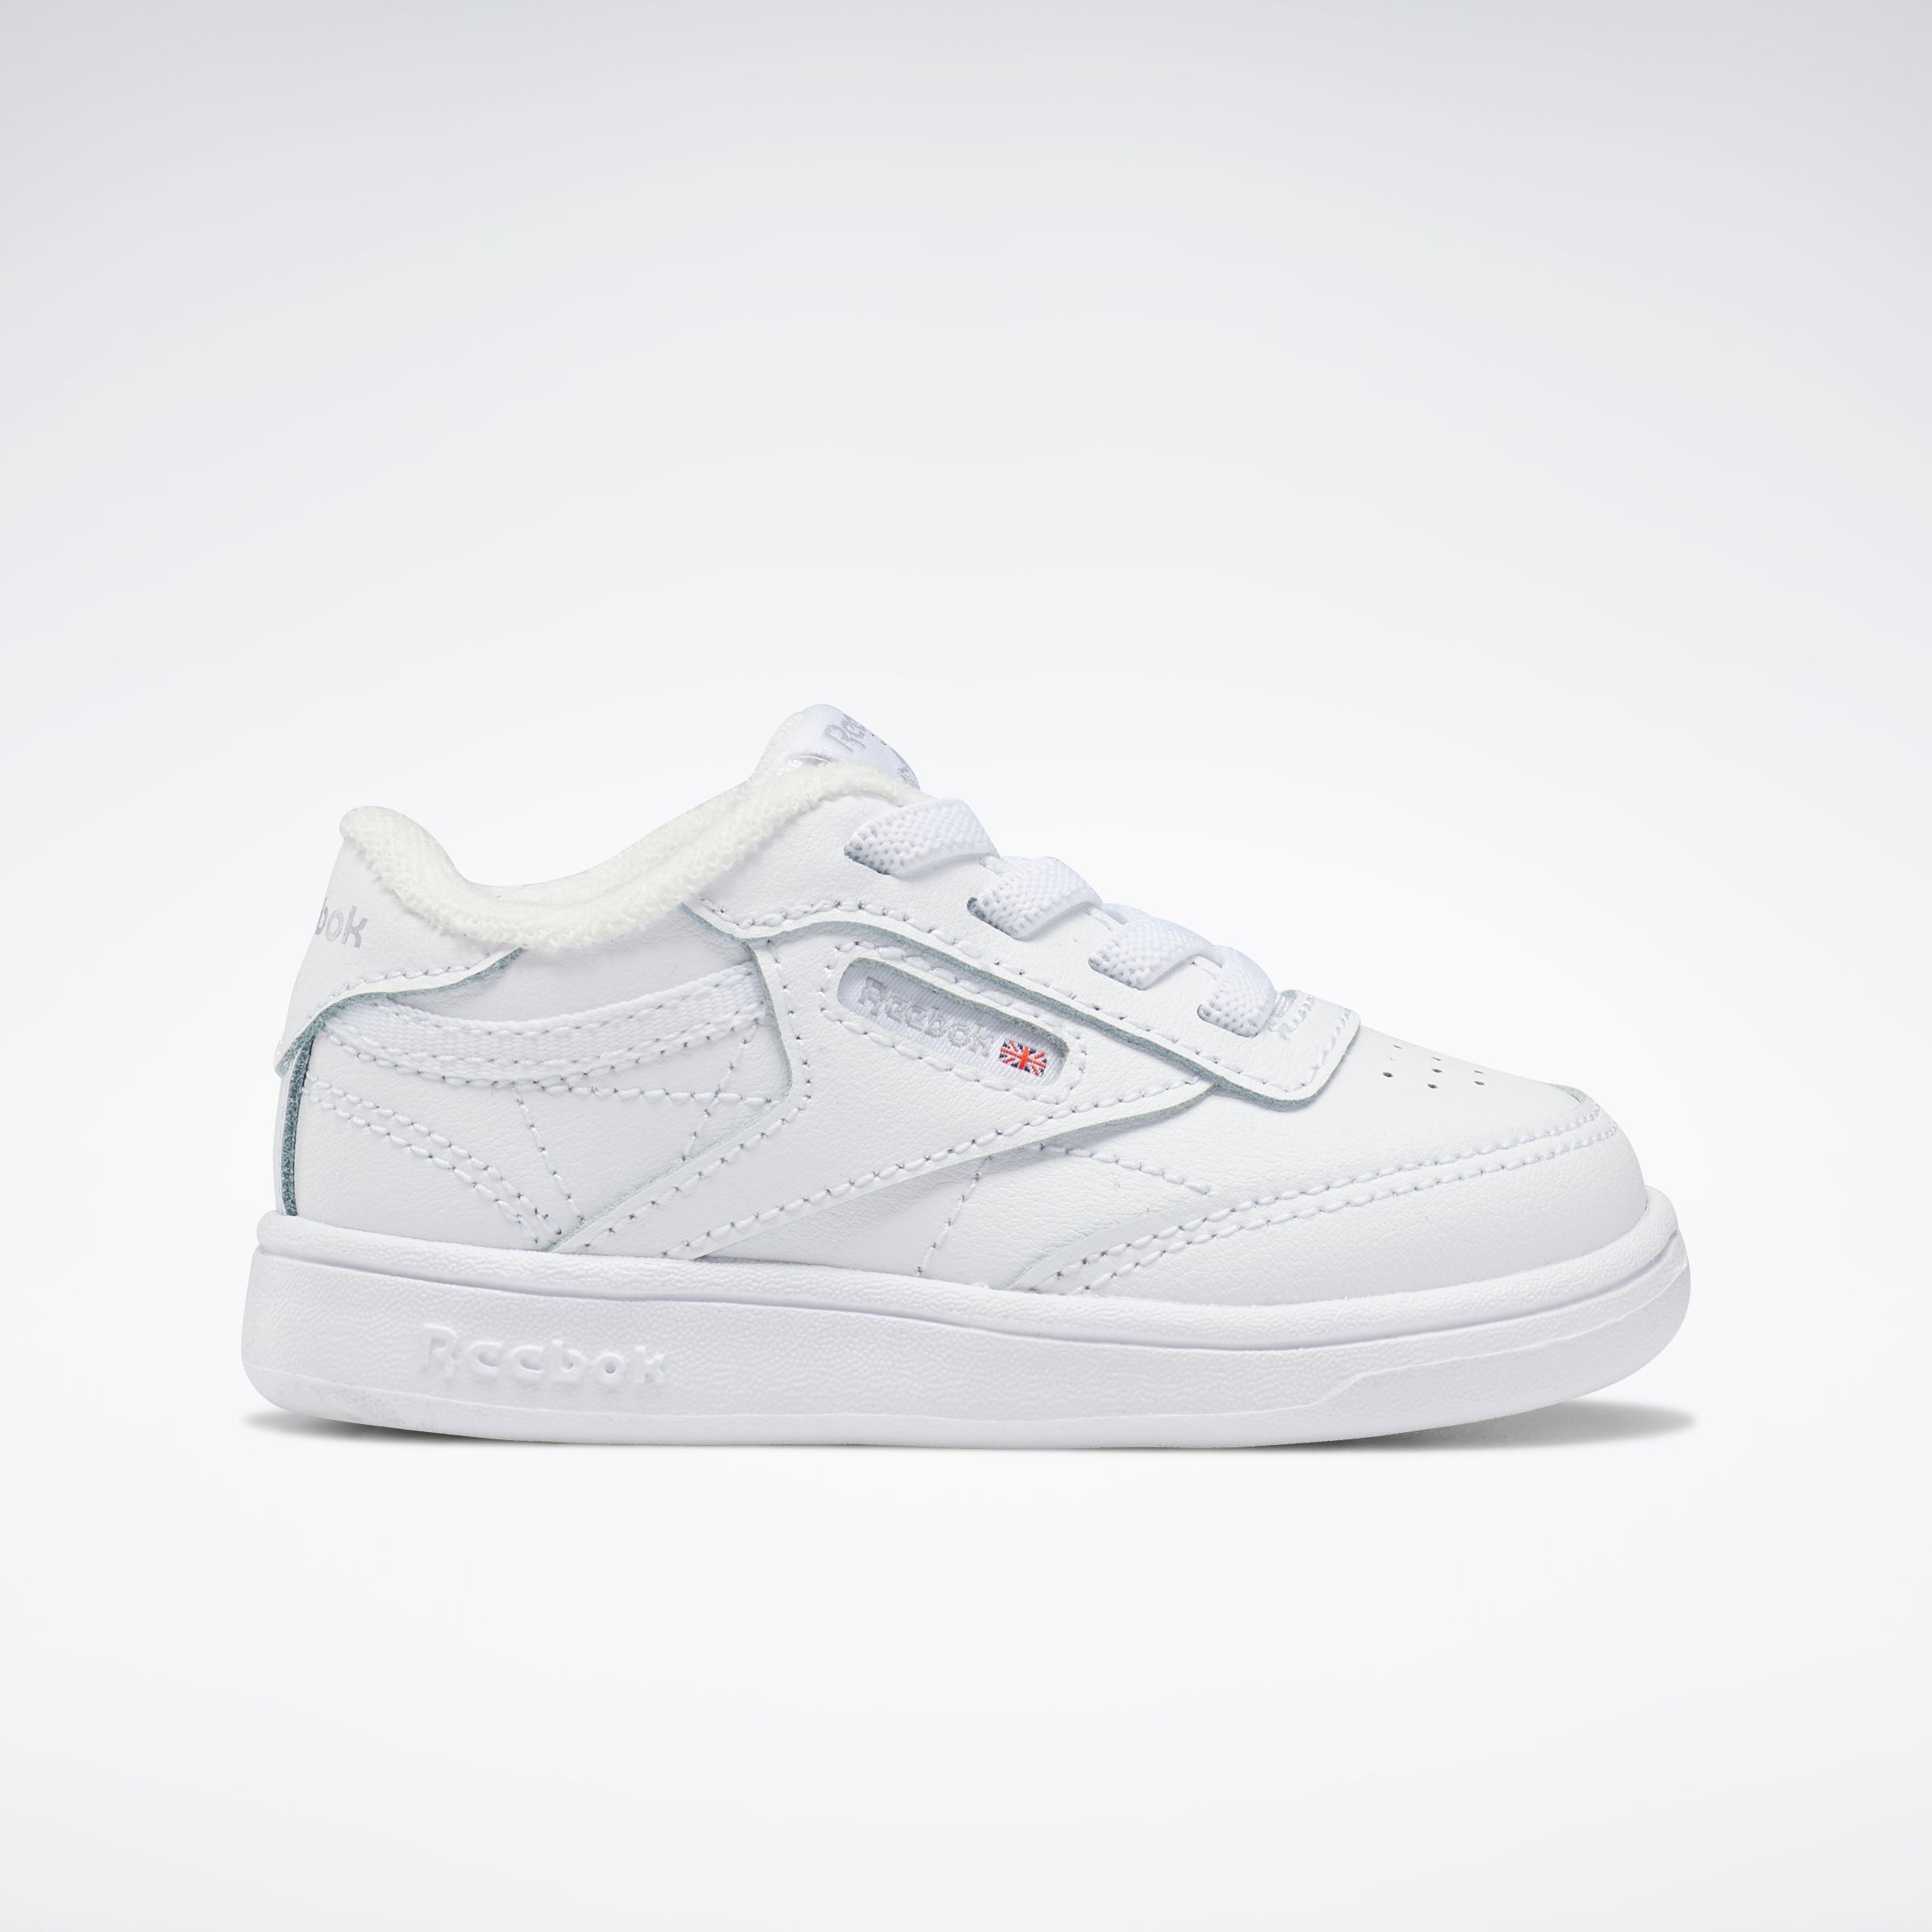 Club C Shoes - Toddler White/White/White – Reebok Australia